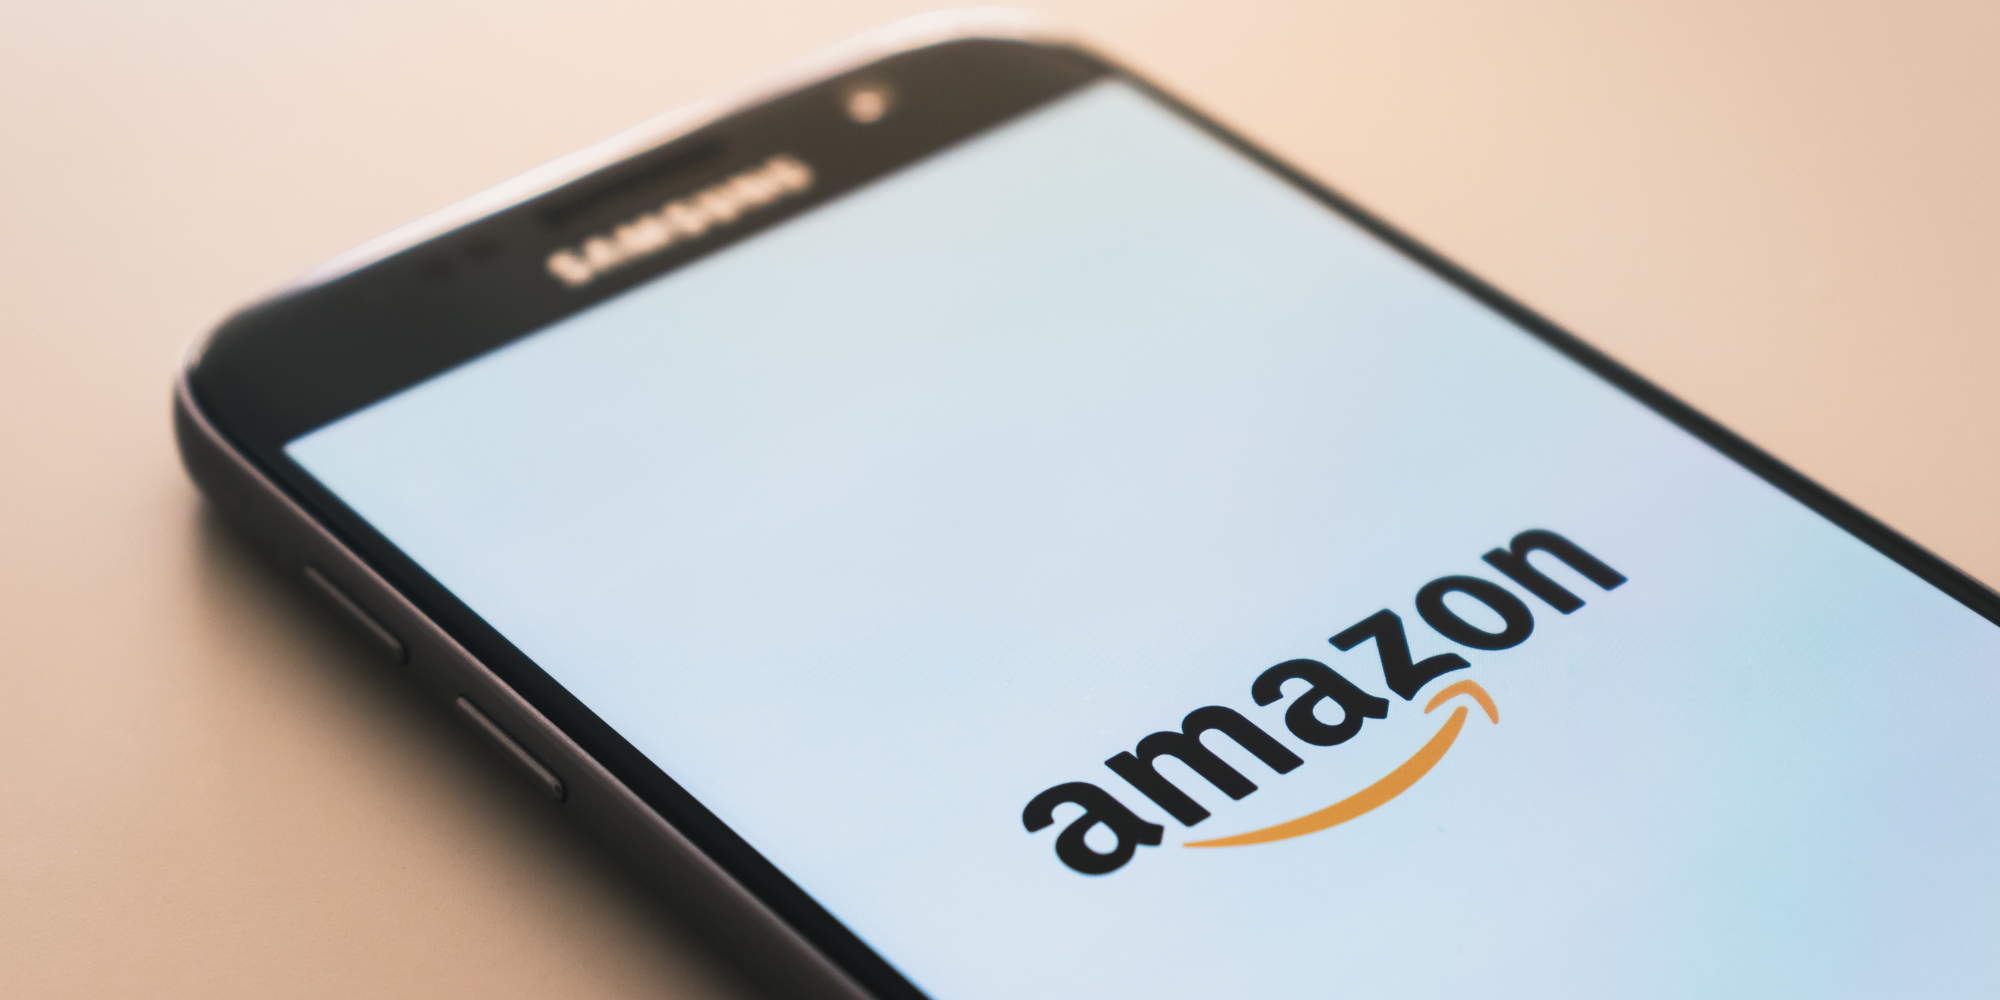 Κινητό τηλέφωνο με το λογότυπο της Amazon στην οθόνη